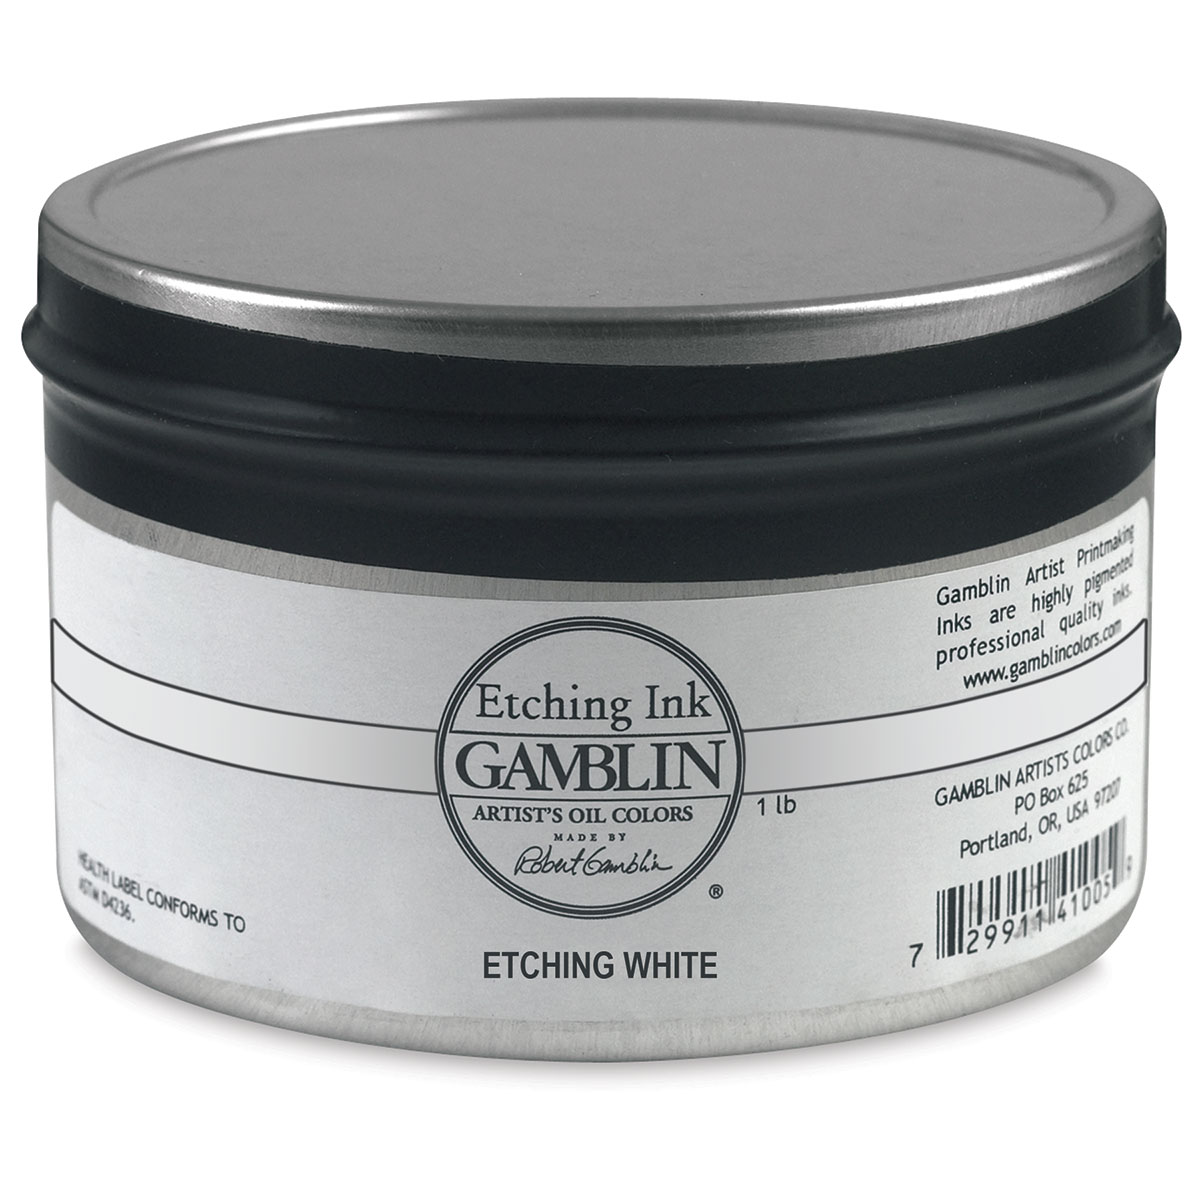 Gamblin Etching Ink - Etching White, 1 lb | Michaels